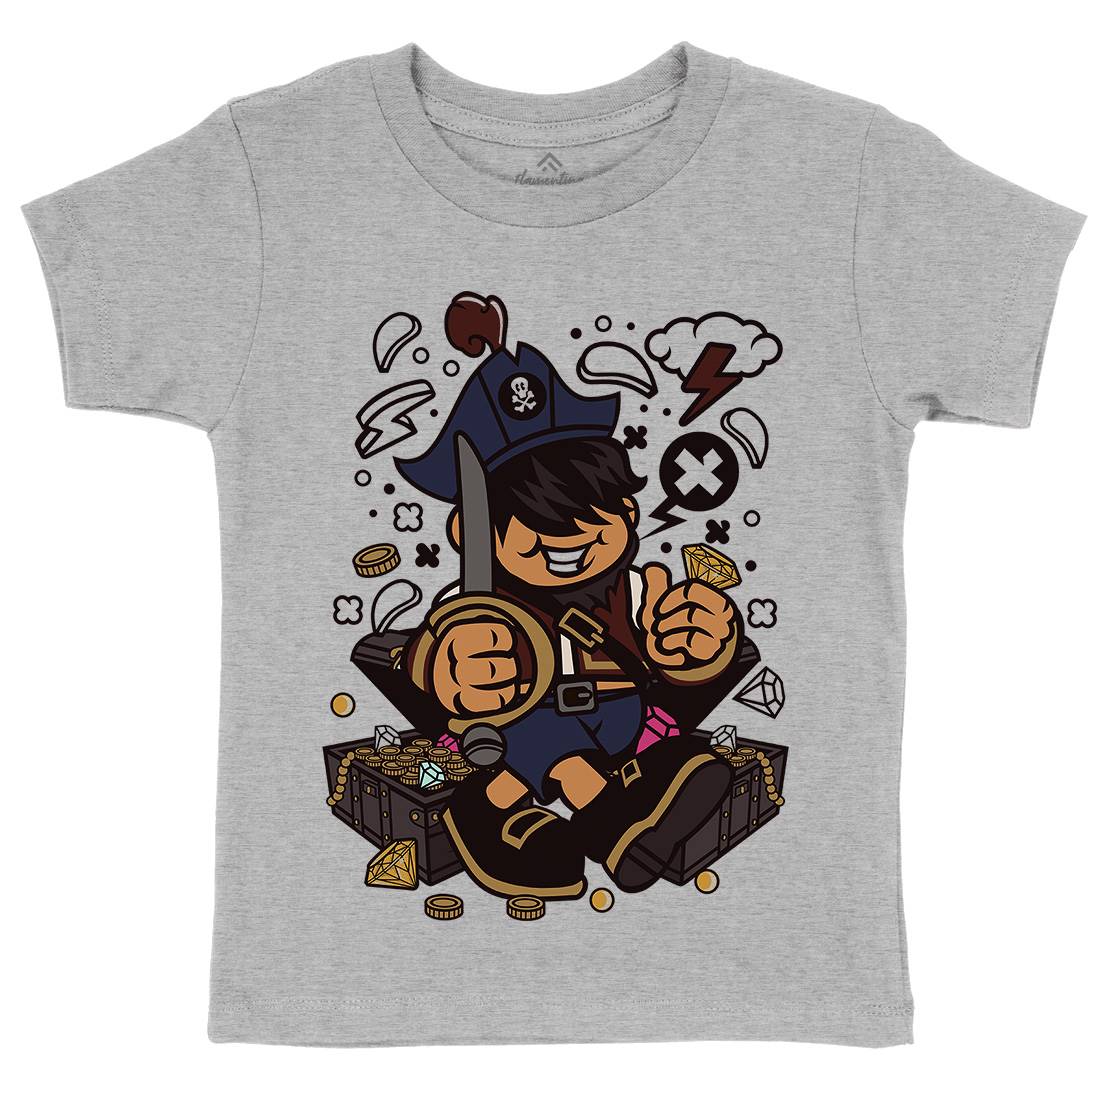 Pirate Kid Kids Crew Neck T-Shirt Navy C191